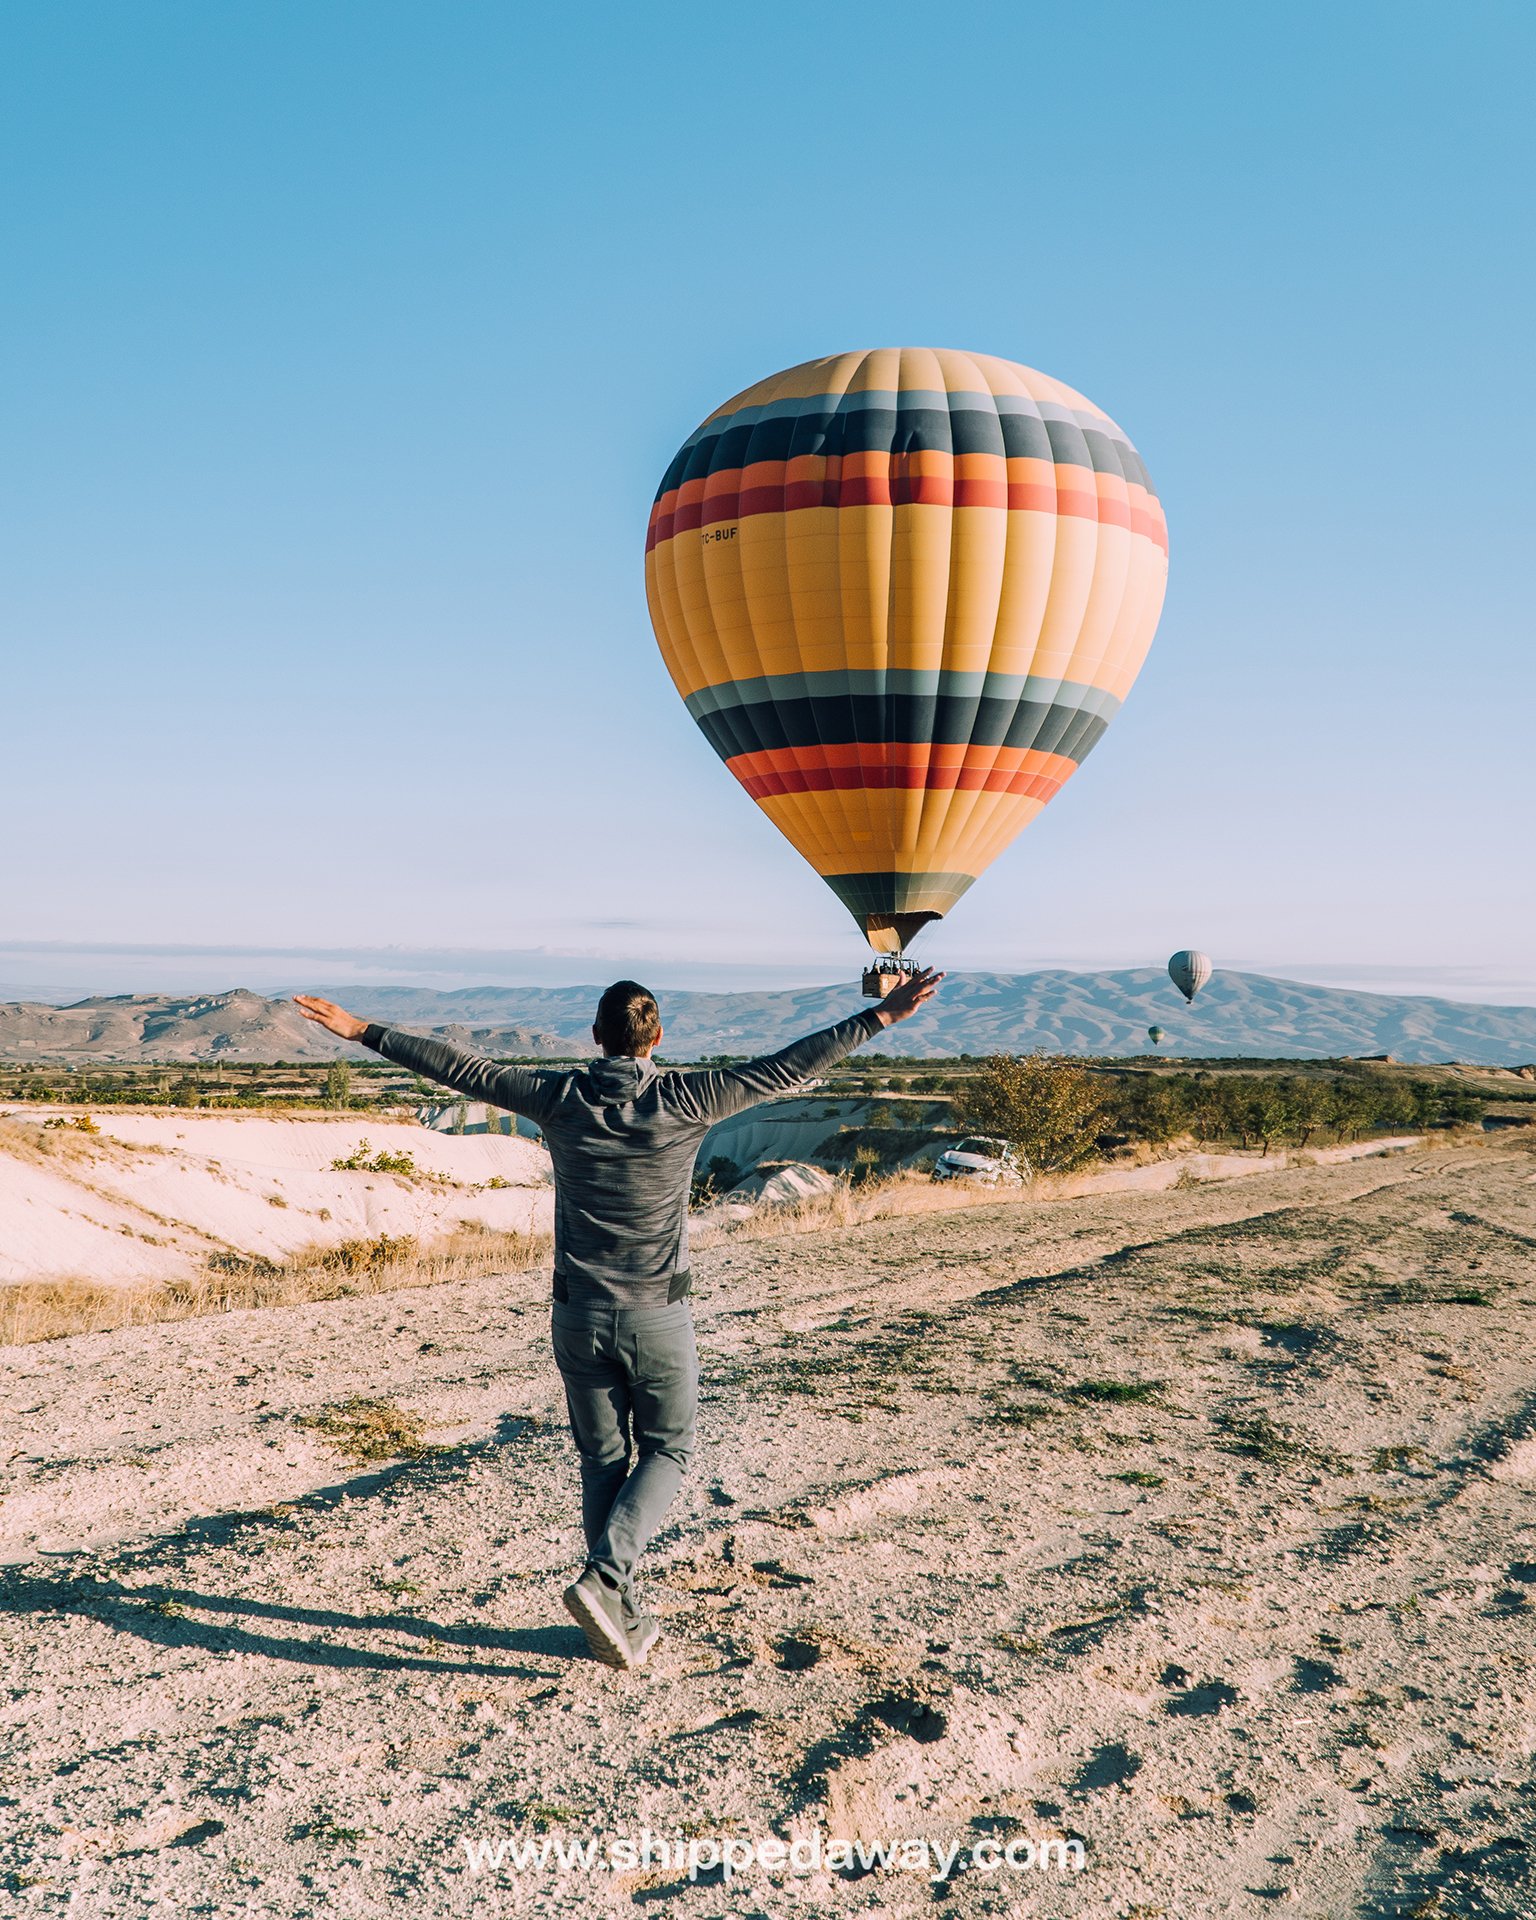 Matej Špan with a hot air balloon in Cappadocia, Turkey